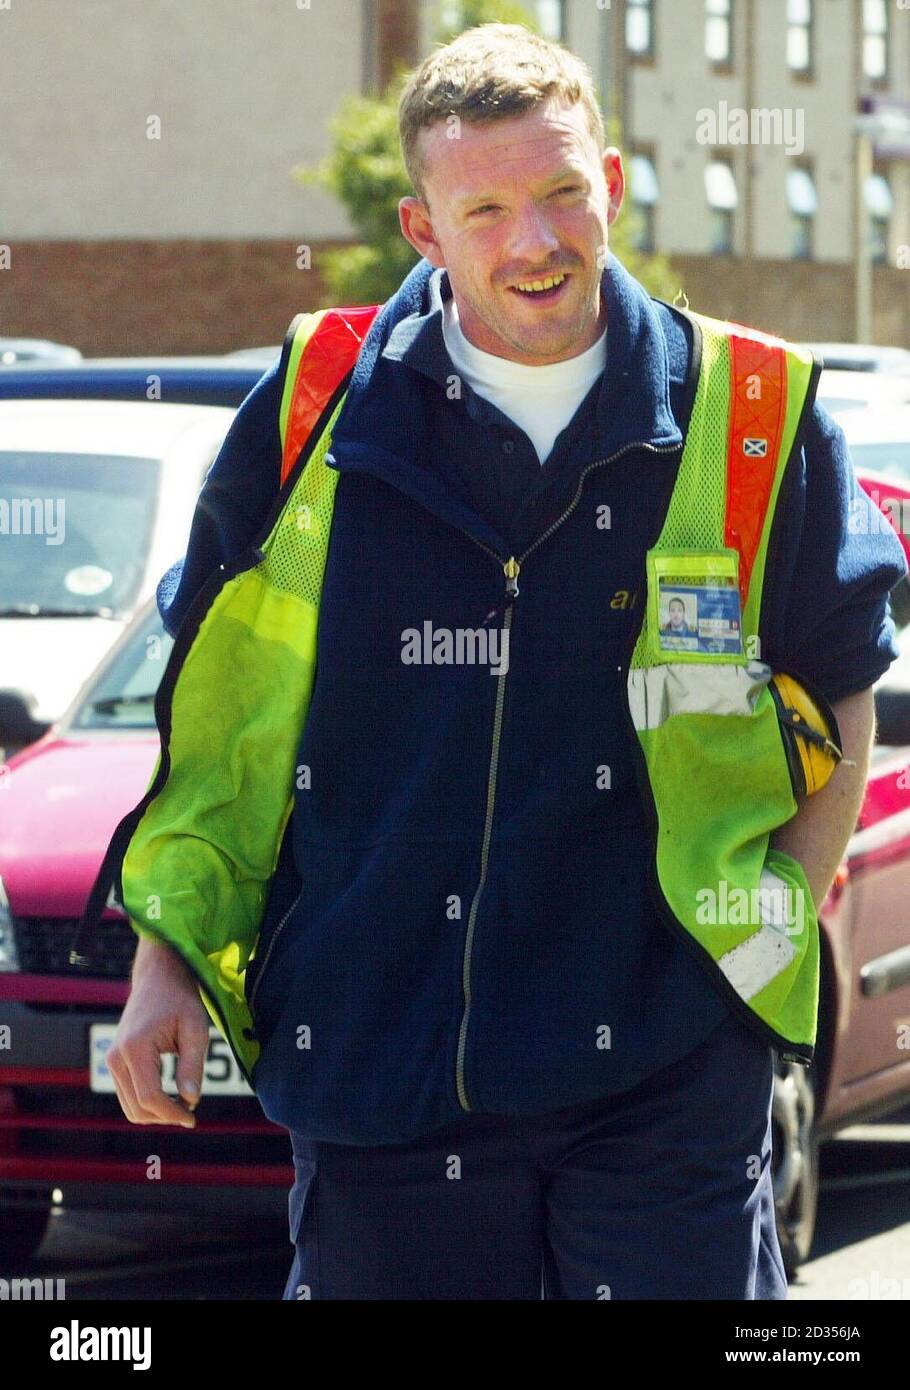 Terroranschlag-Held John Smeaton kommt nach dem Autobombenanschlag auf den Flughafen Glasgow am 30/06/2007 für seinen ersten Arbeitstag zurück. Stockfoto